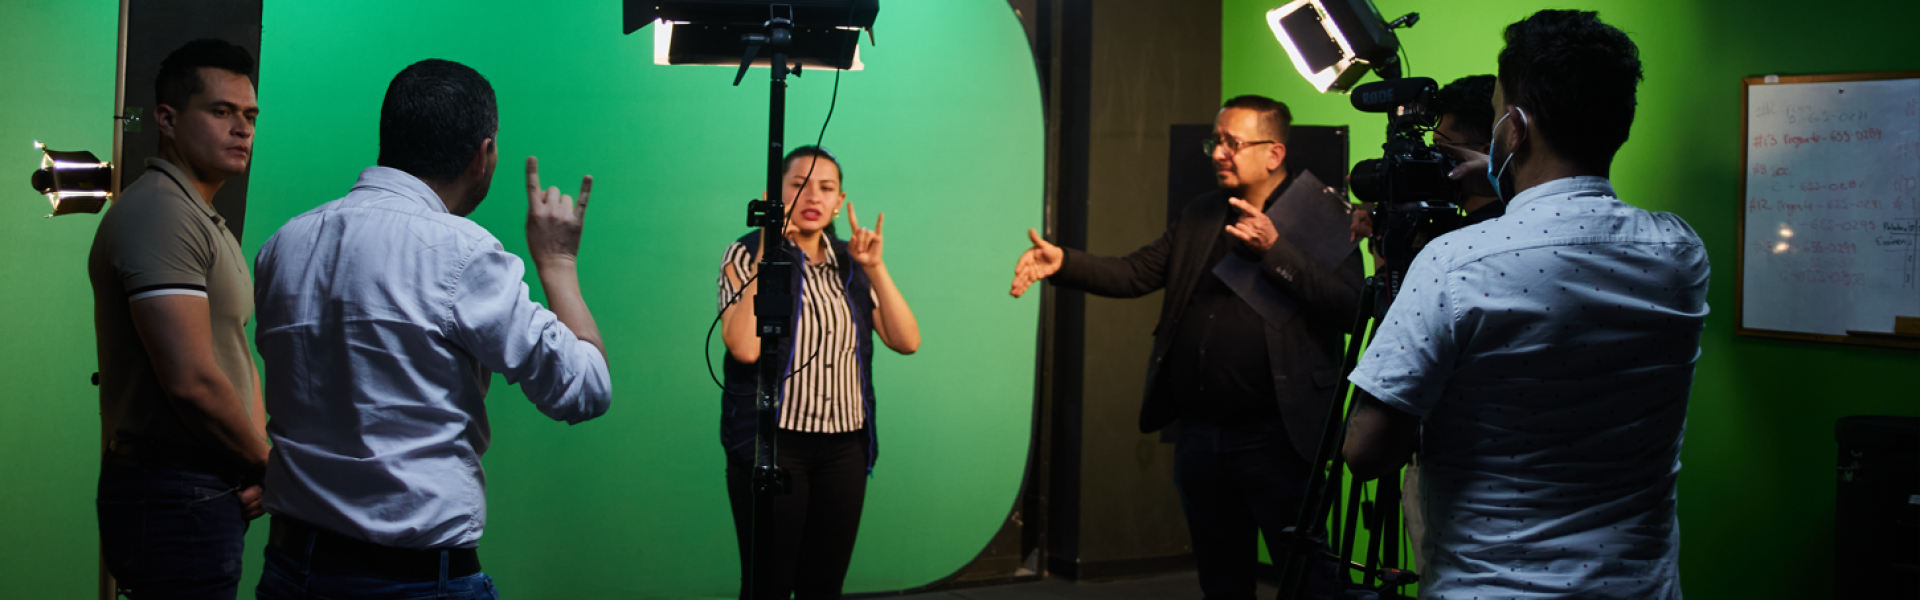 Guía para la producción de contenidos audiovisuales con ajustes razonables para la población sorda colombiana